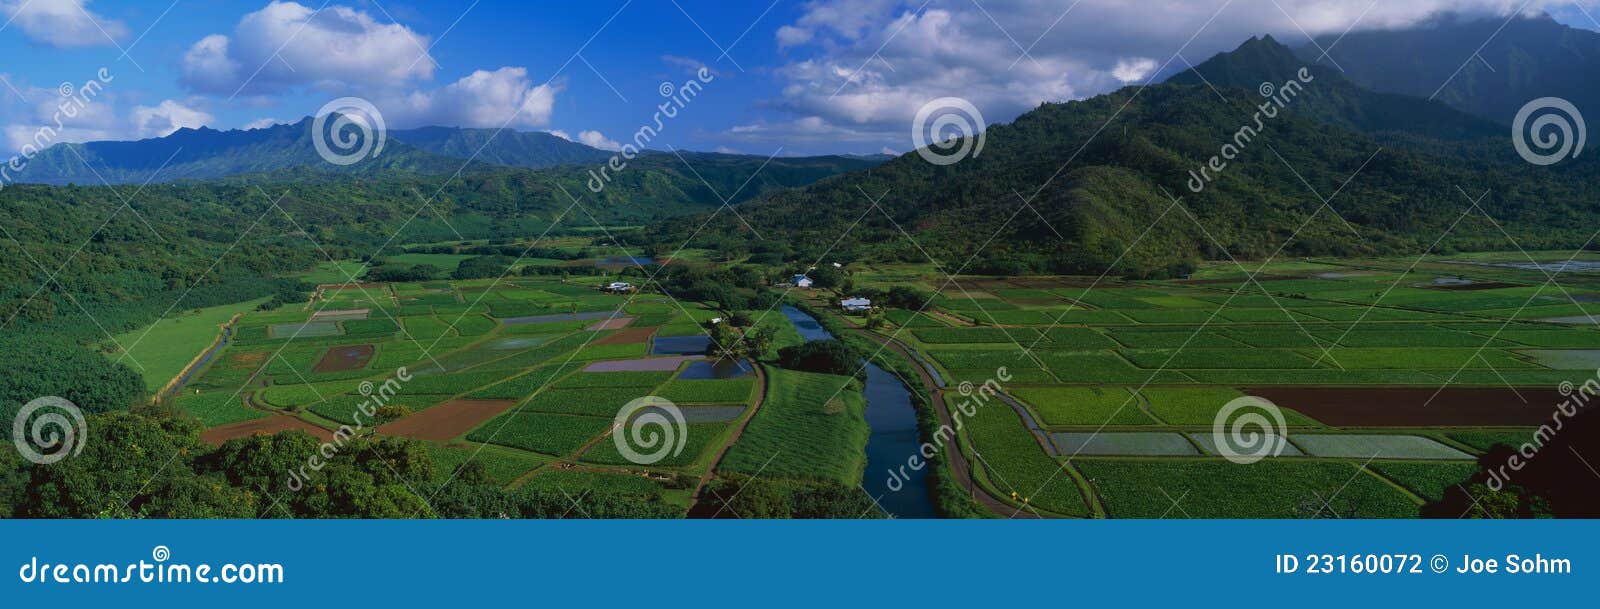 hanalei valley overlook